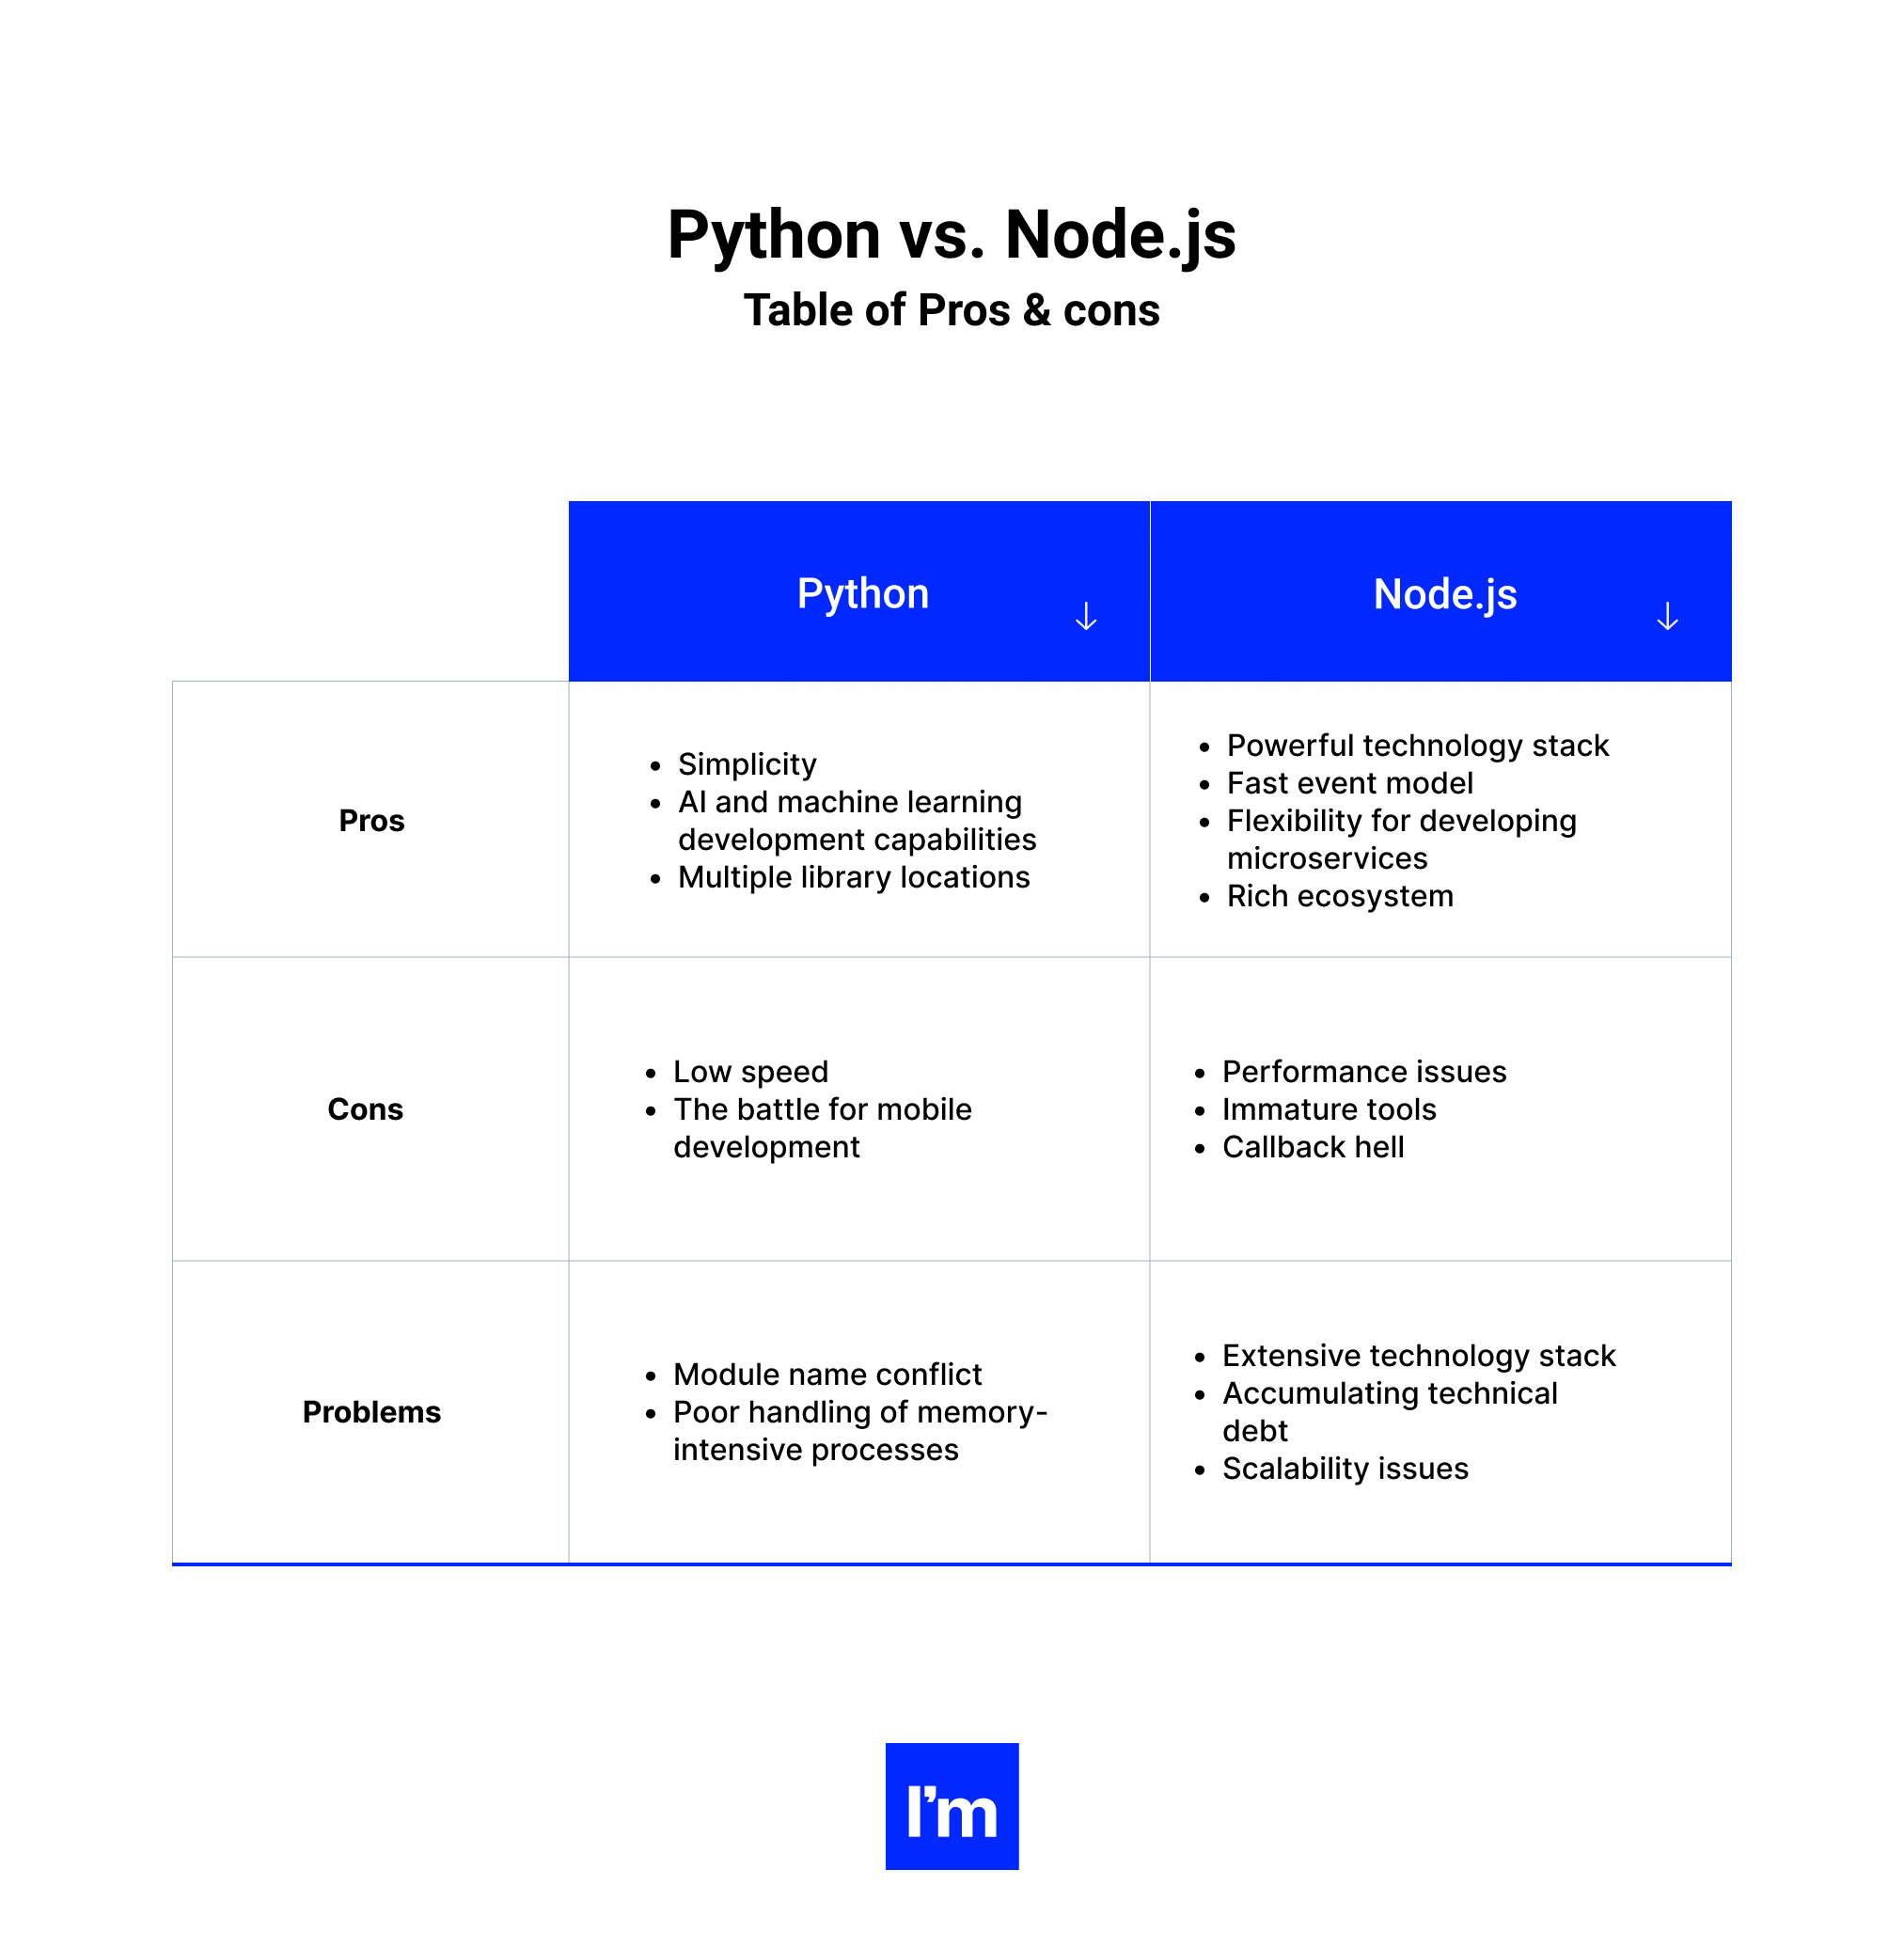 Python vs Node.js -Table 1 - Pros & Cons